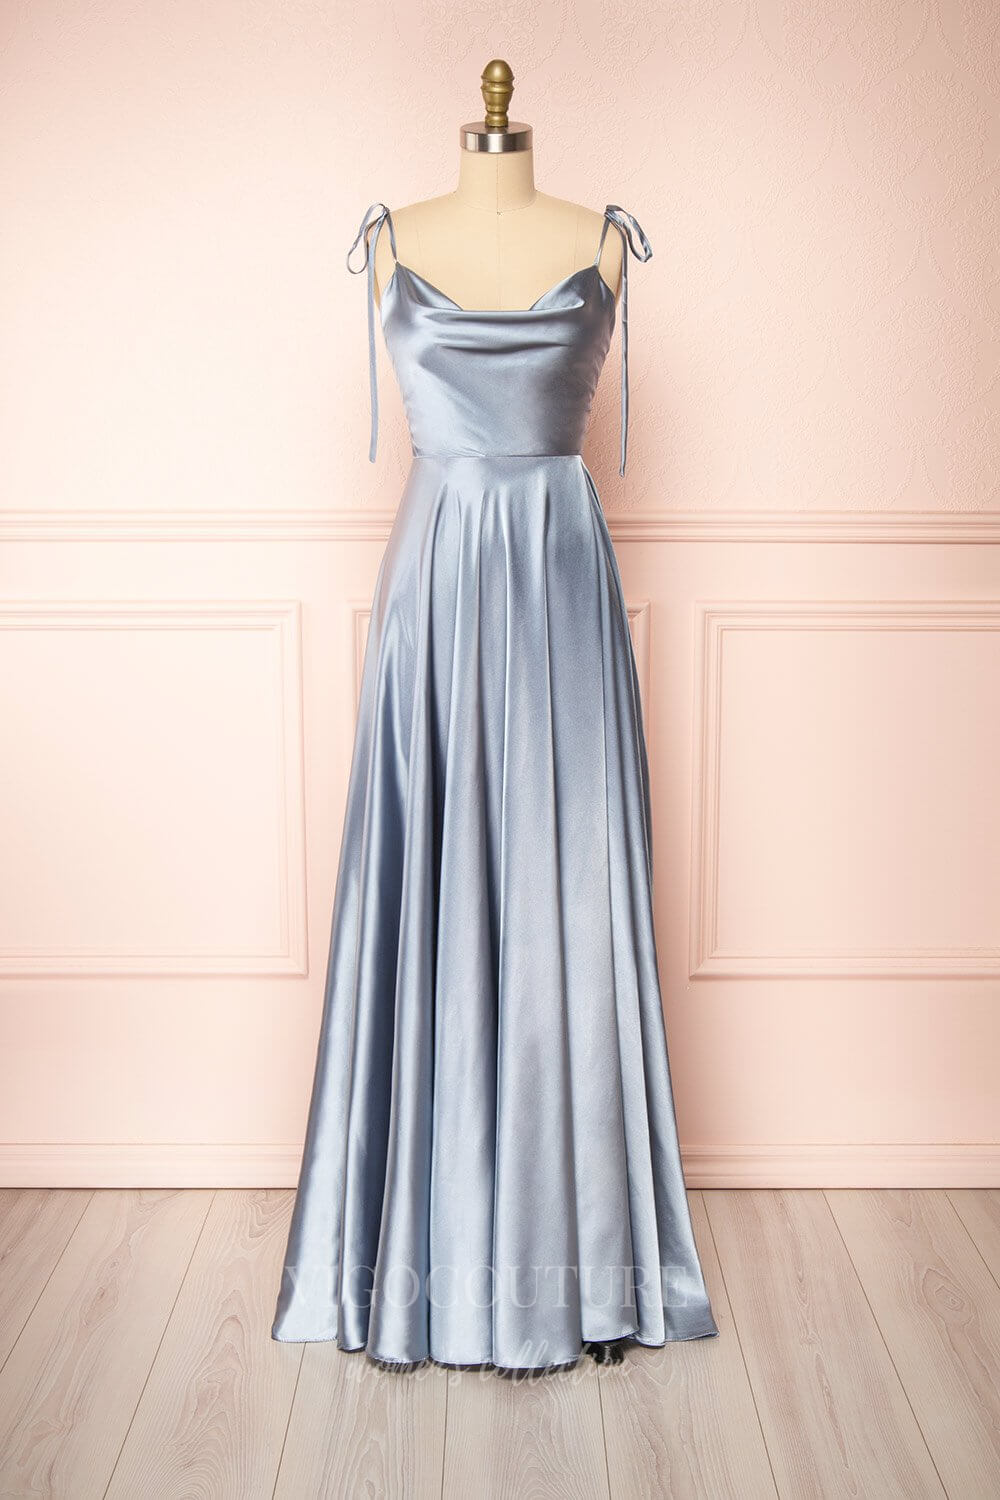 vigocouture-Blush Spaghetti Strap Prom Dress 20575-Prom Dresses-vigocouture-Silver-US2-